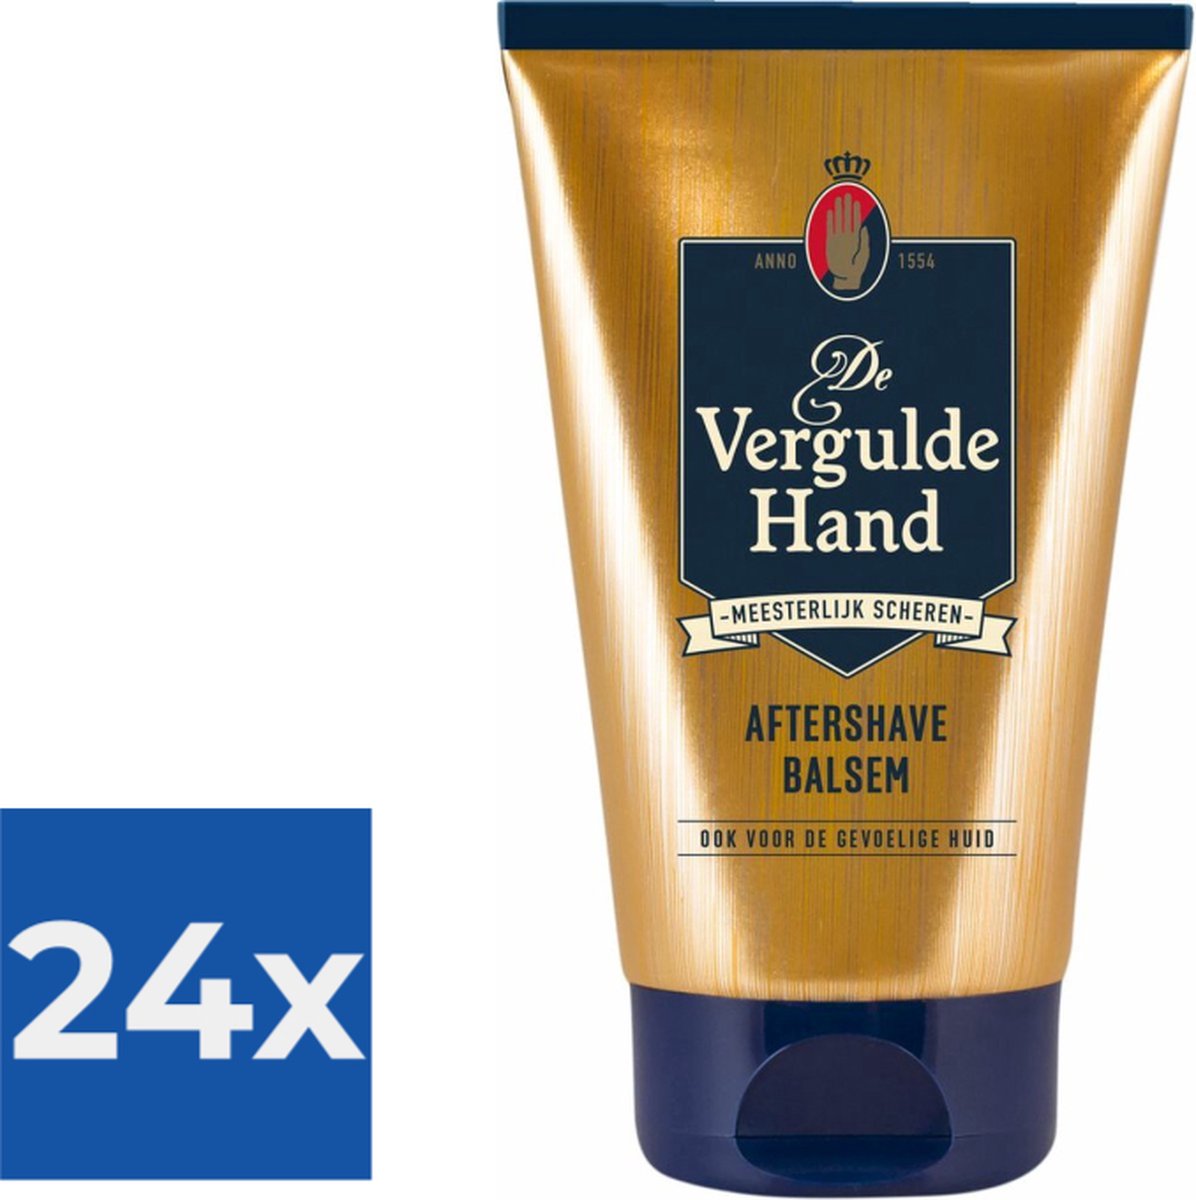 Vergulde Hand Aftershave Balsem 100 ml - Voordeelverpakking 24 stuks